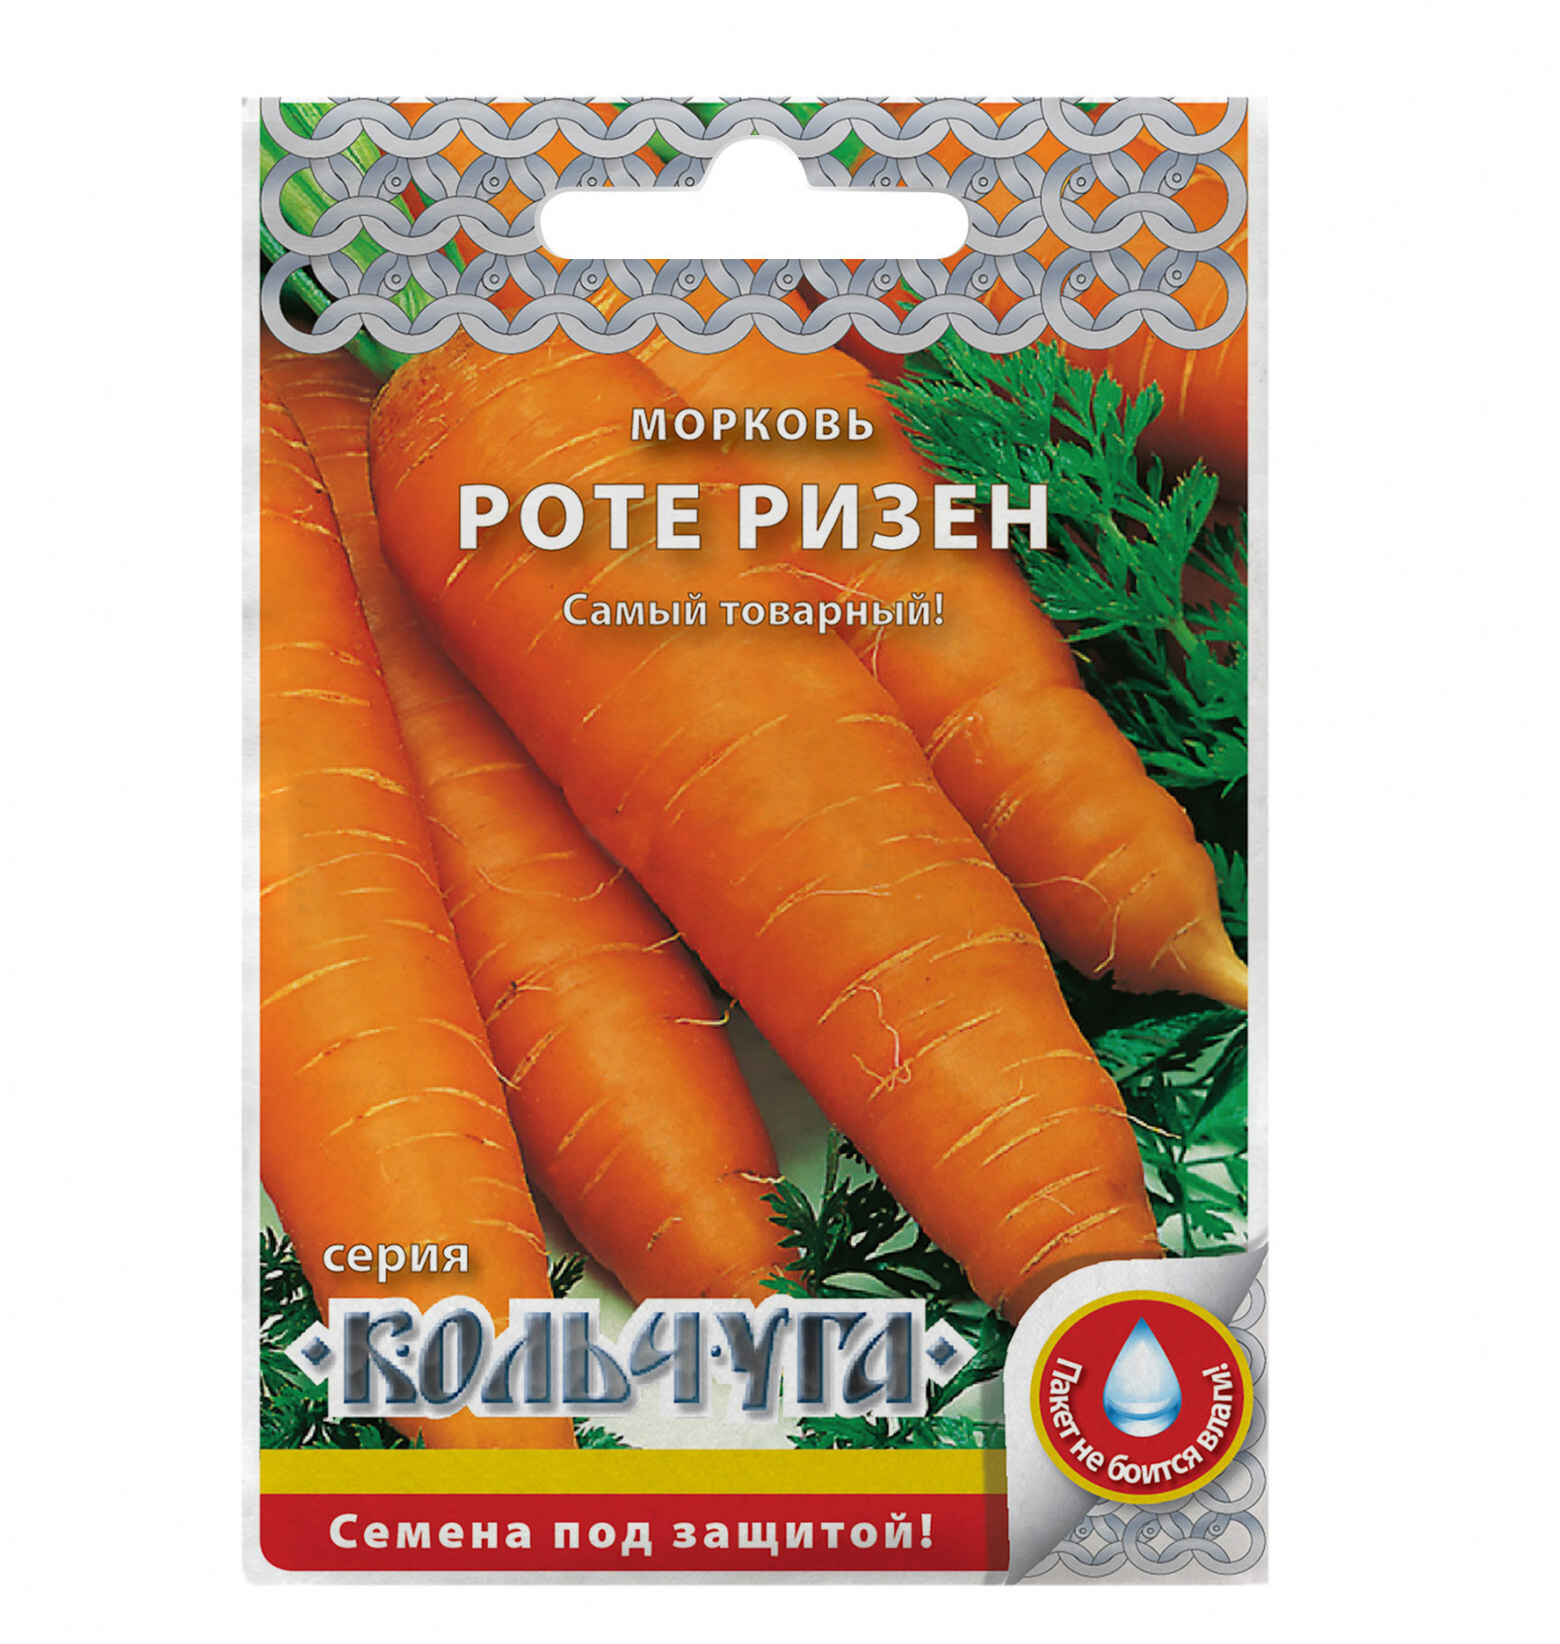 Семена морковь Кольчуга Роте ризен Е03007 1 уп.